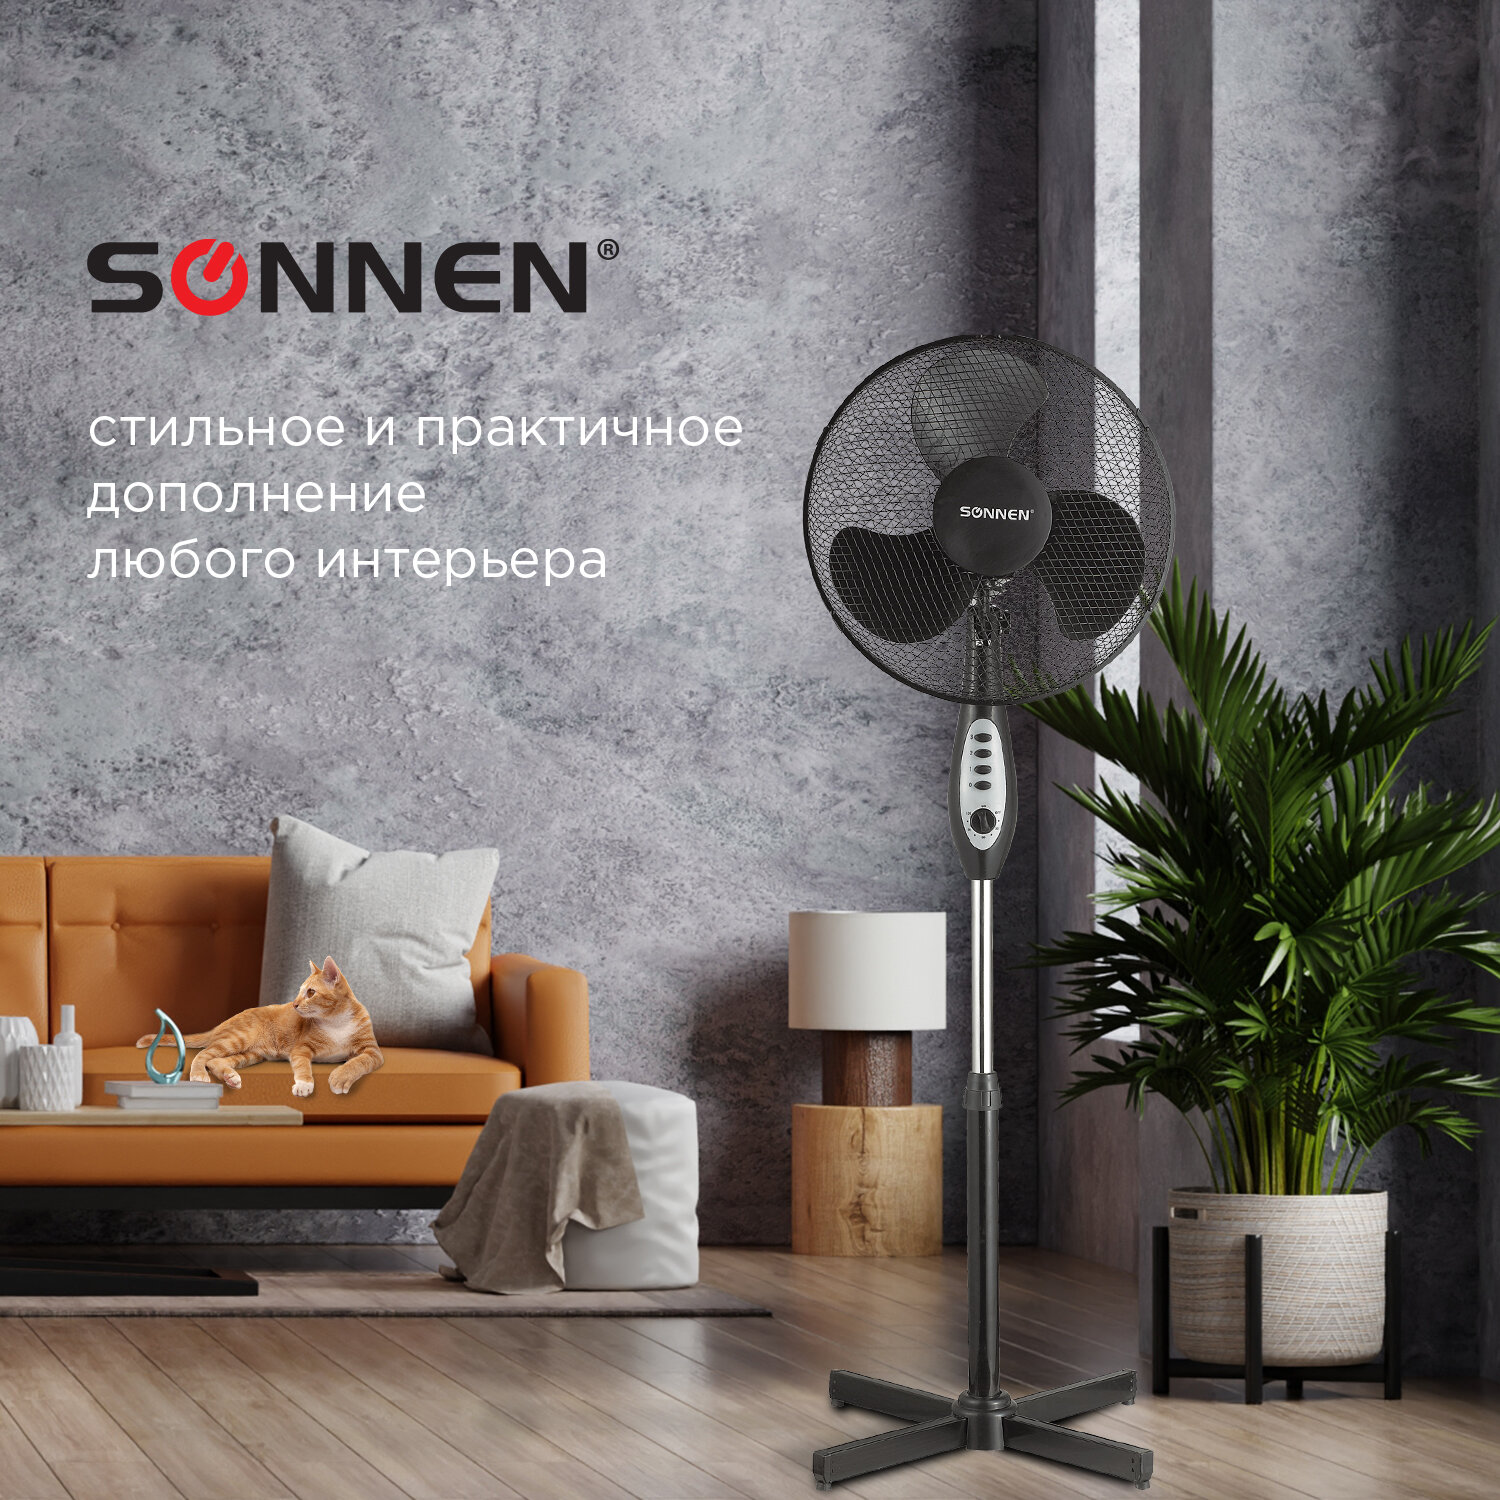 Вентилятор напольный Sonnen FS40-A55 3 скоростных режима таймер d=40 см 45Вт - фото 2